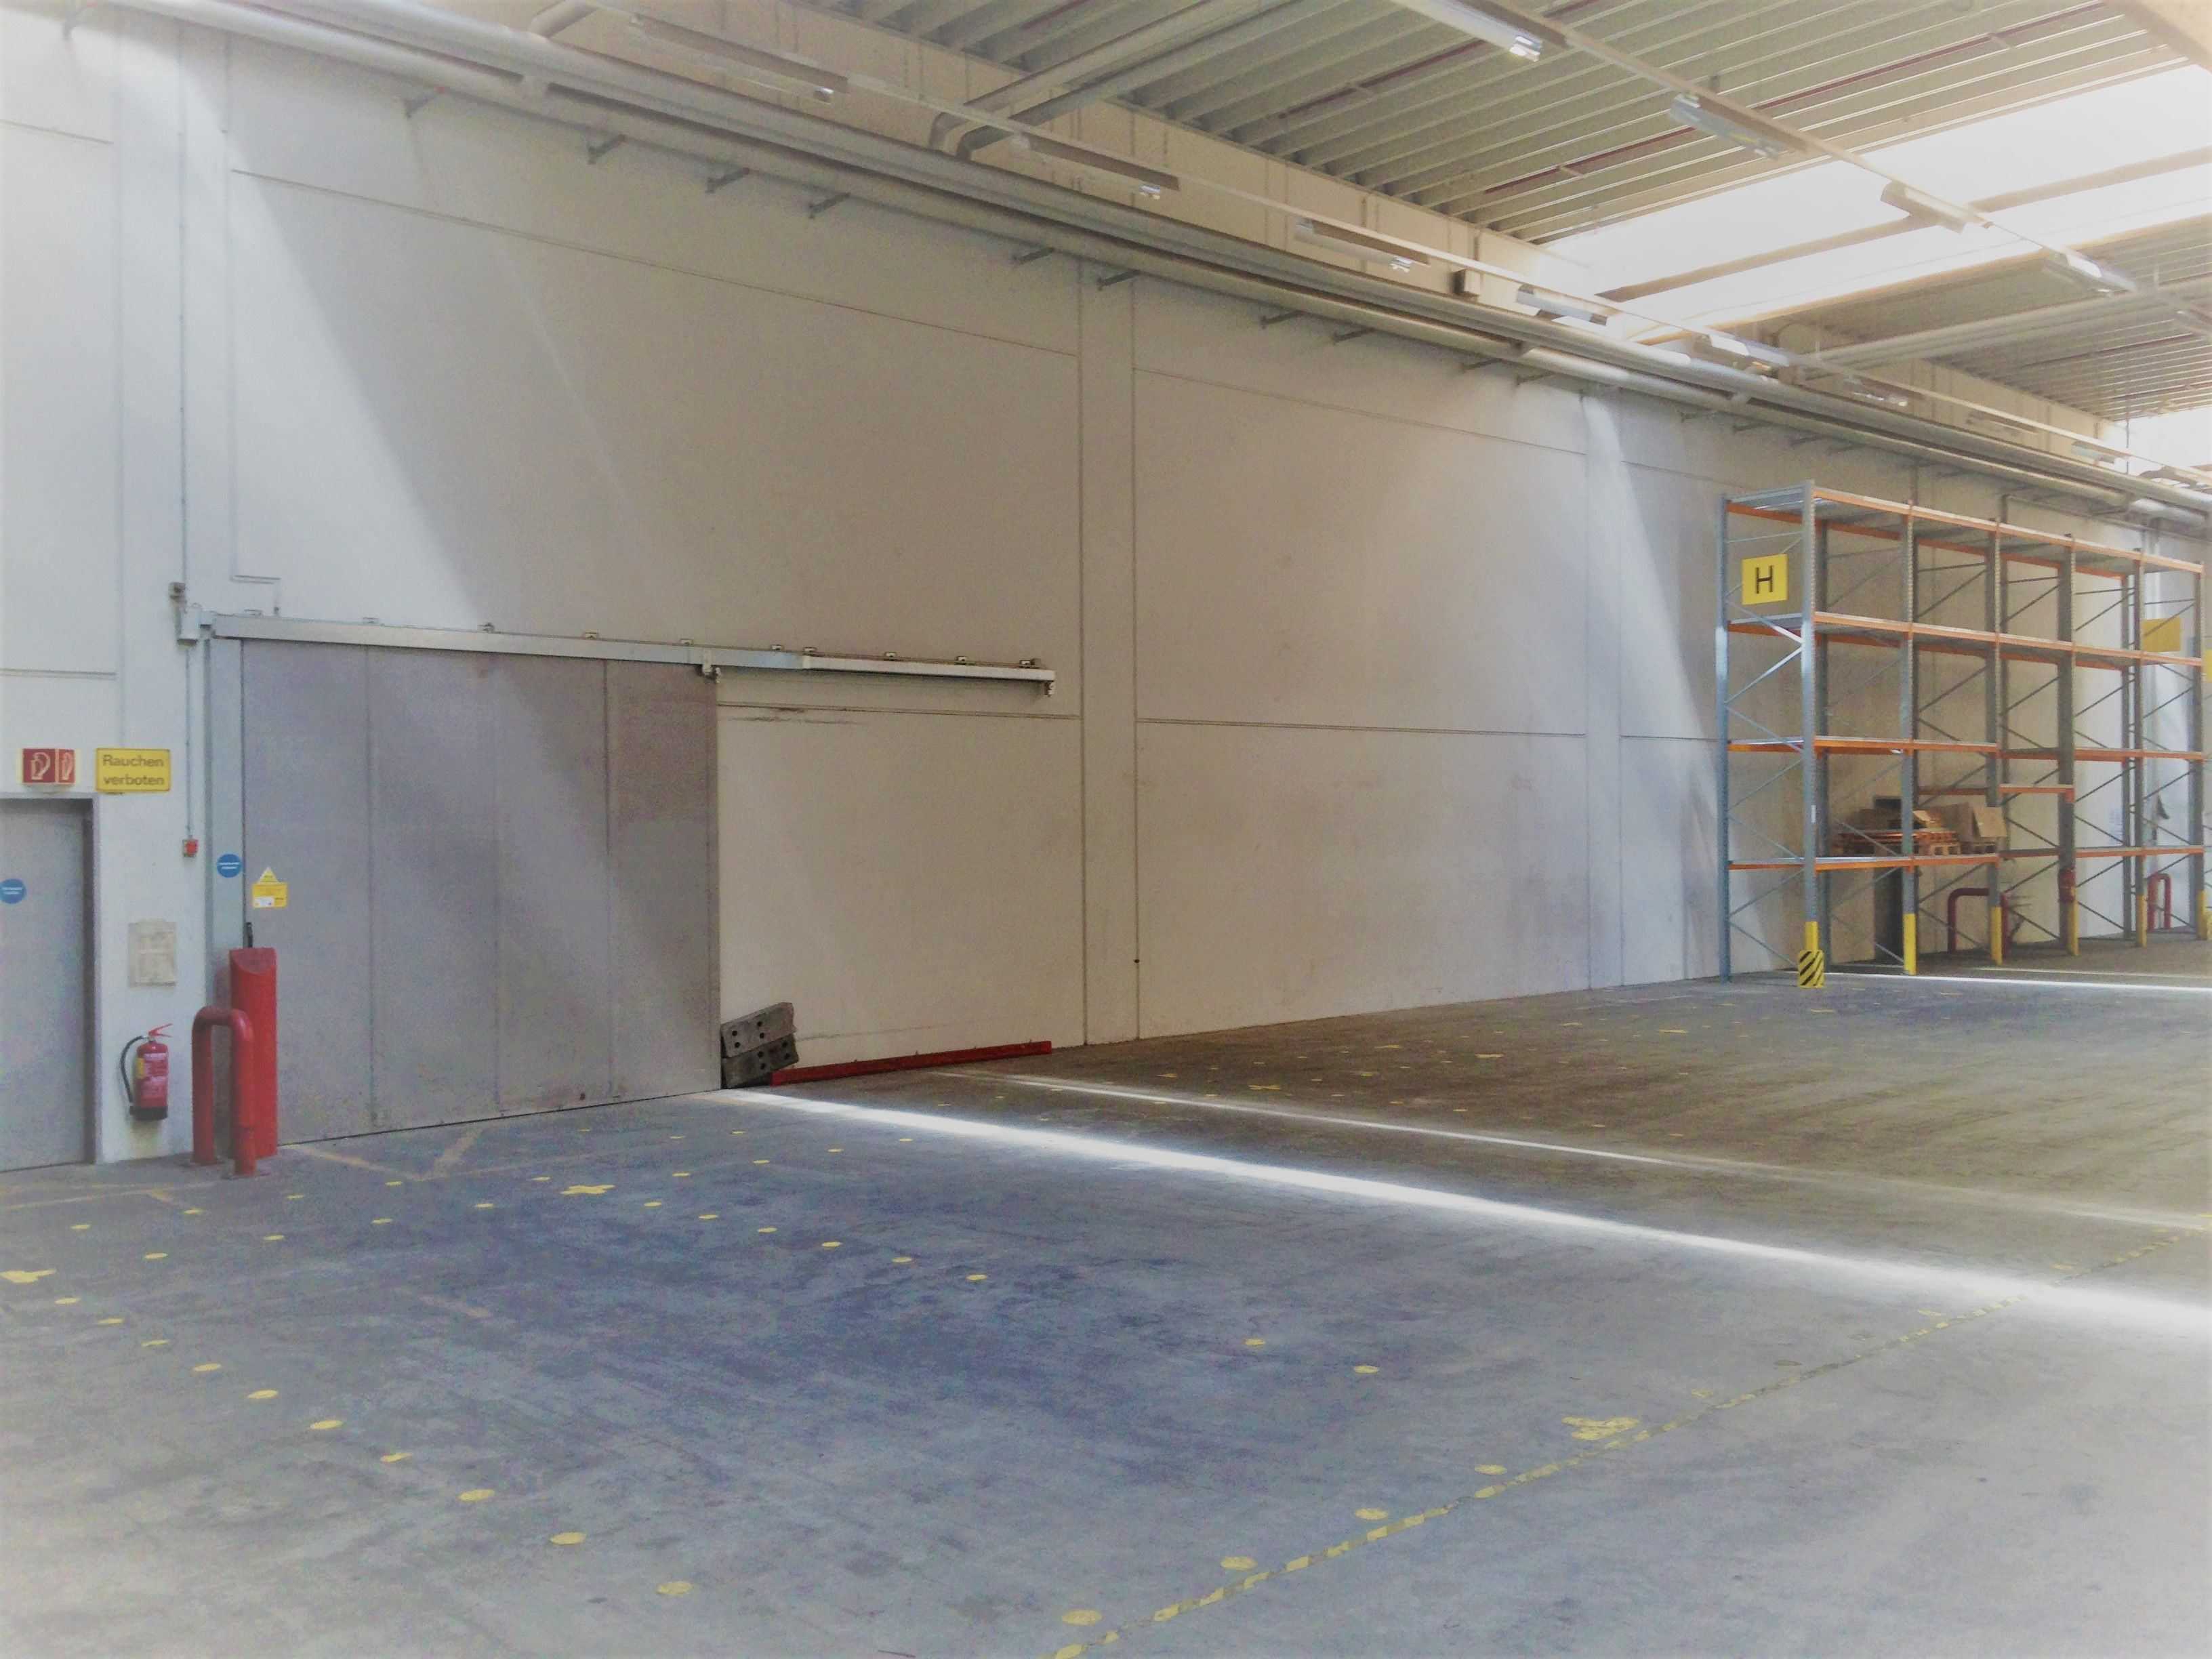 Logivest vermittelt 700 Quadratmeter Büro- und Hallenfläche an enersol GmbH Bild